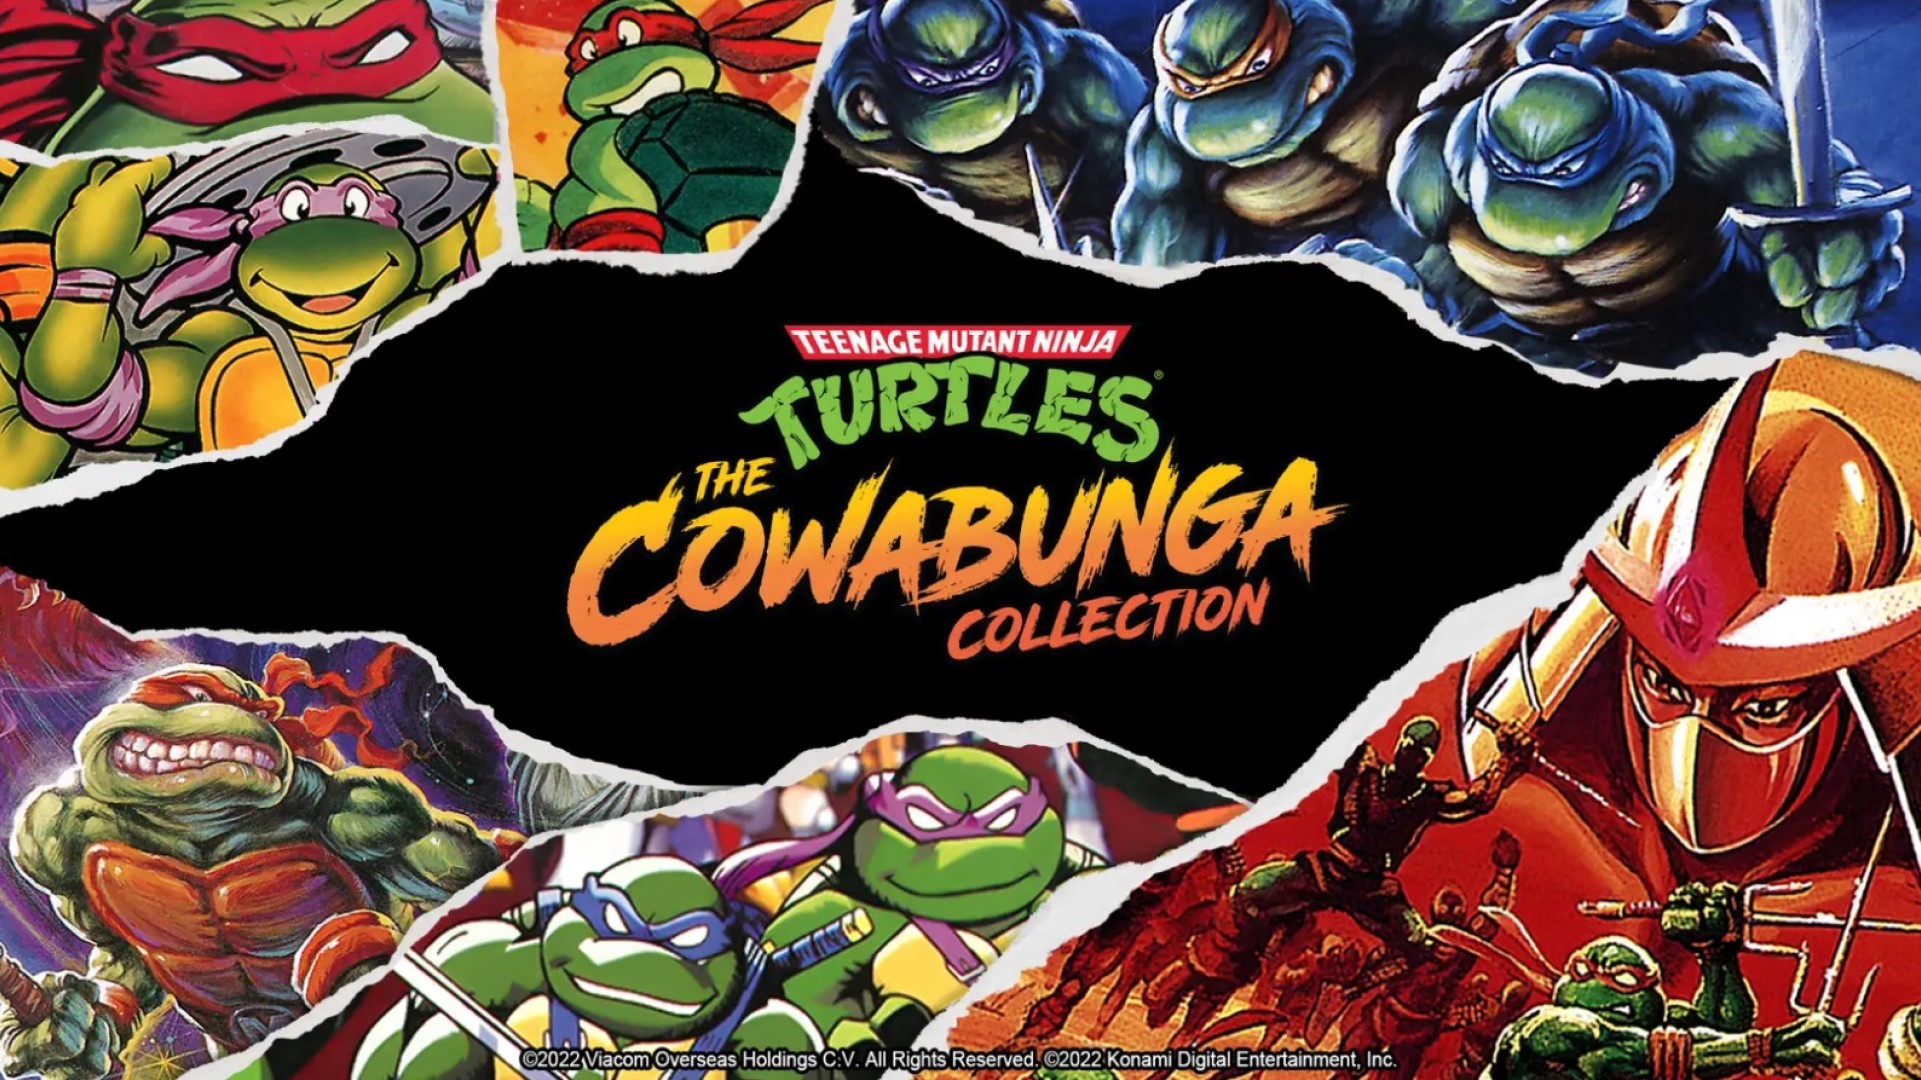 فروش Cowabunga Collection لاکپشت های نینجا از مرز ۱ میلیون نسخه گذشت